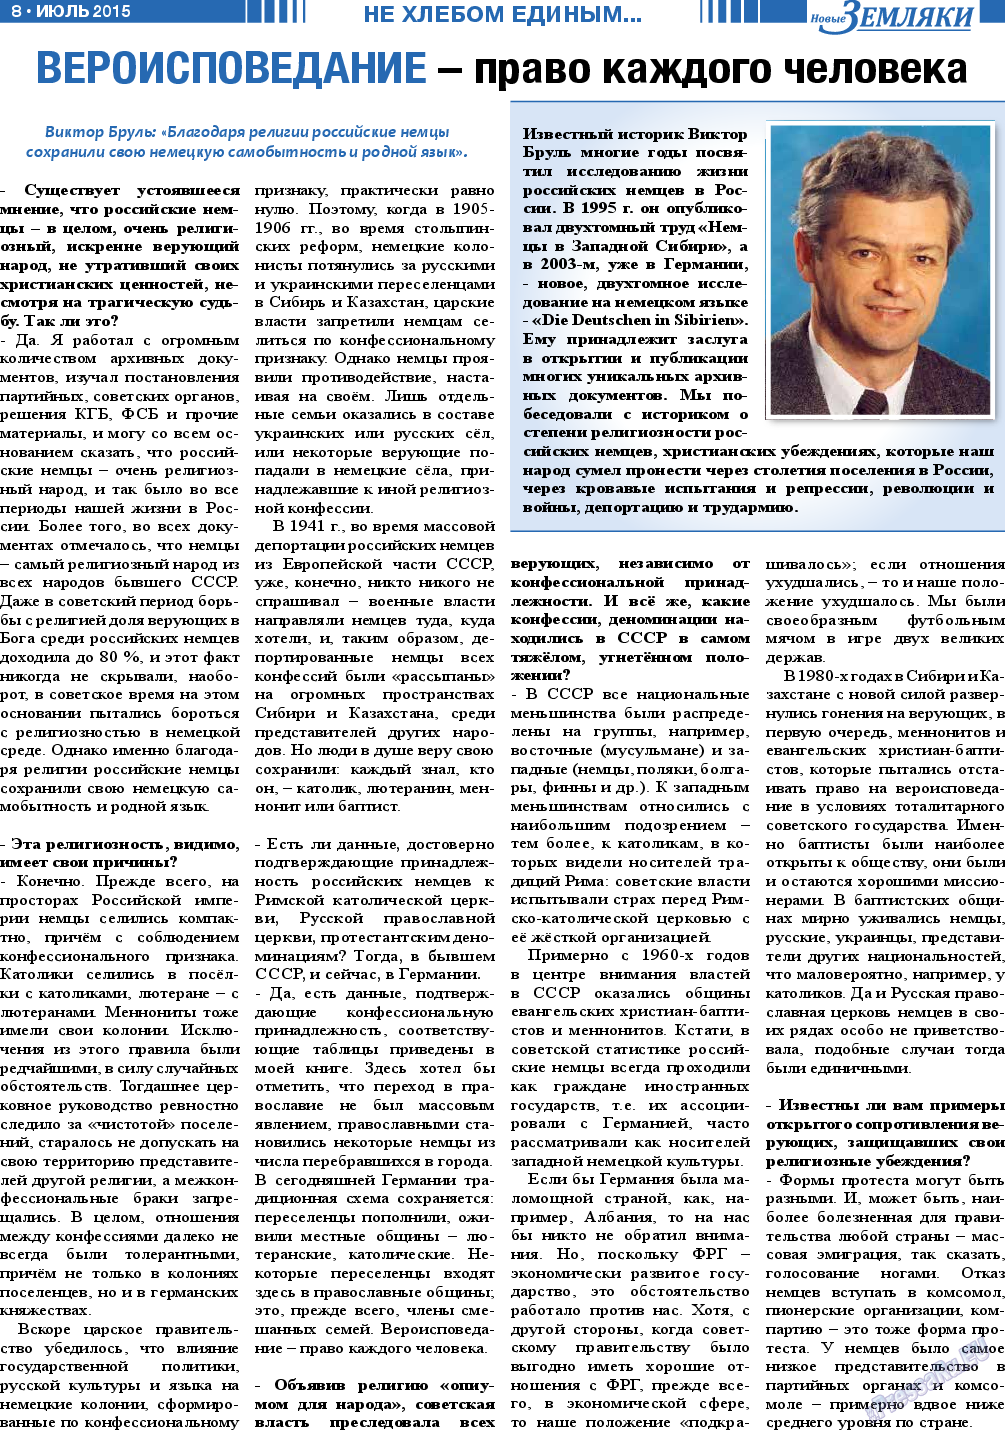 Новые Земляки, газета. 2015 №7 стр.8